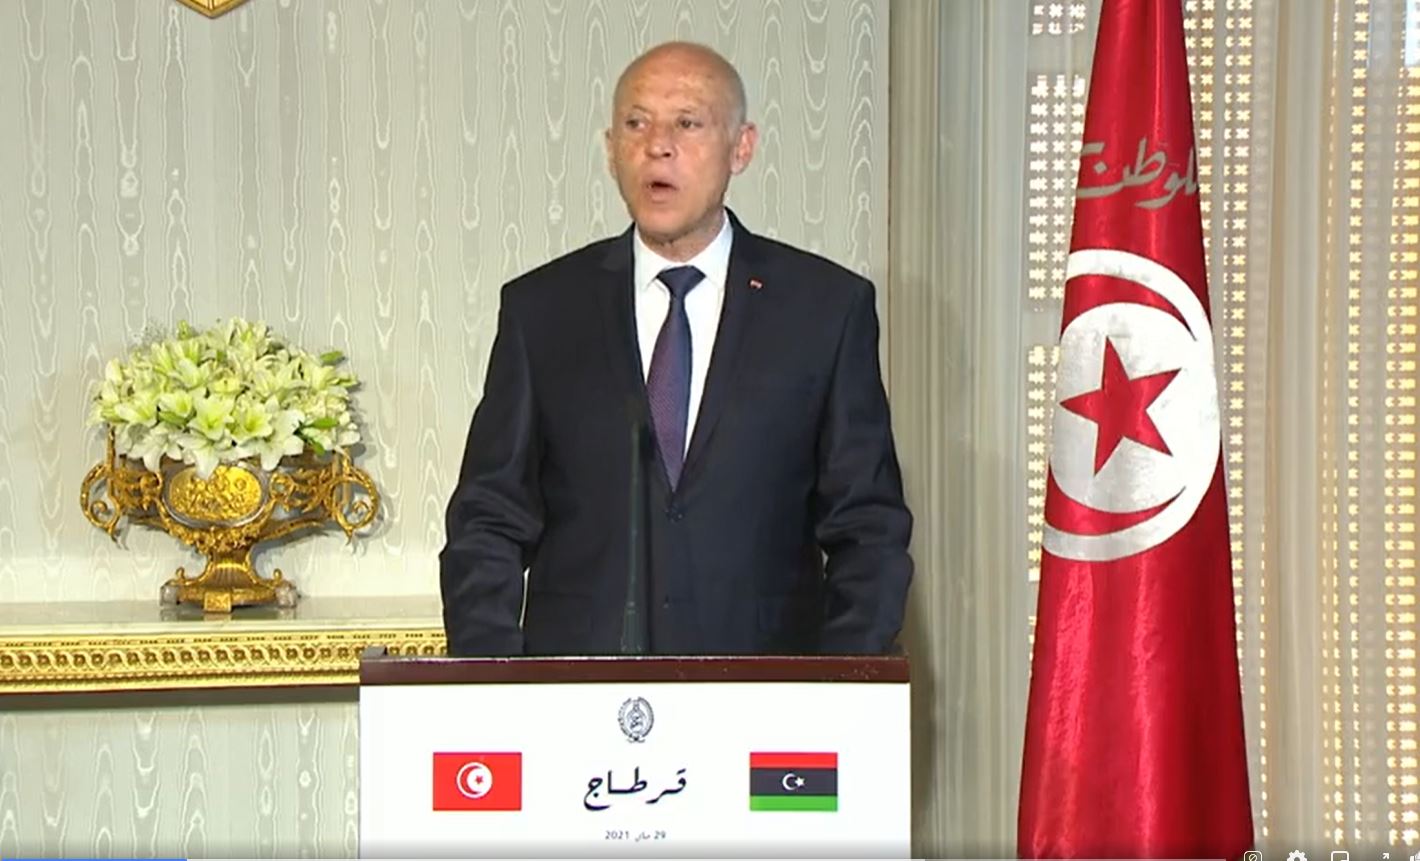 قيس سعيد: الشعبان التونسي والليبي شعب واحد وعائلة واحدة وما يؤلم الليبيين يؤلمنا وما يفرحهم يفرحنا (فيديو)